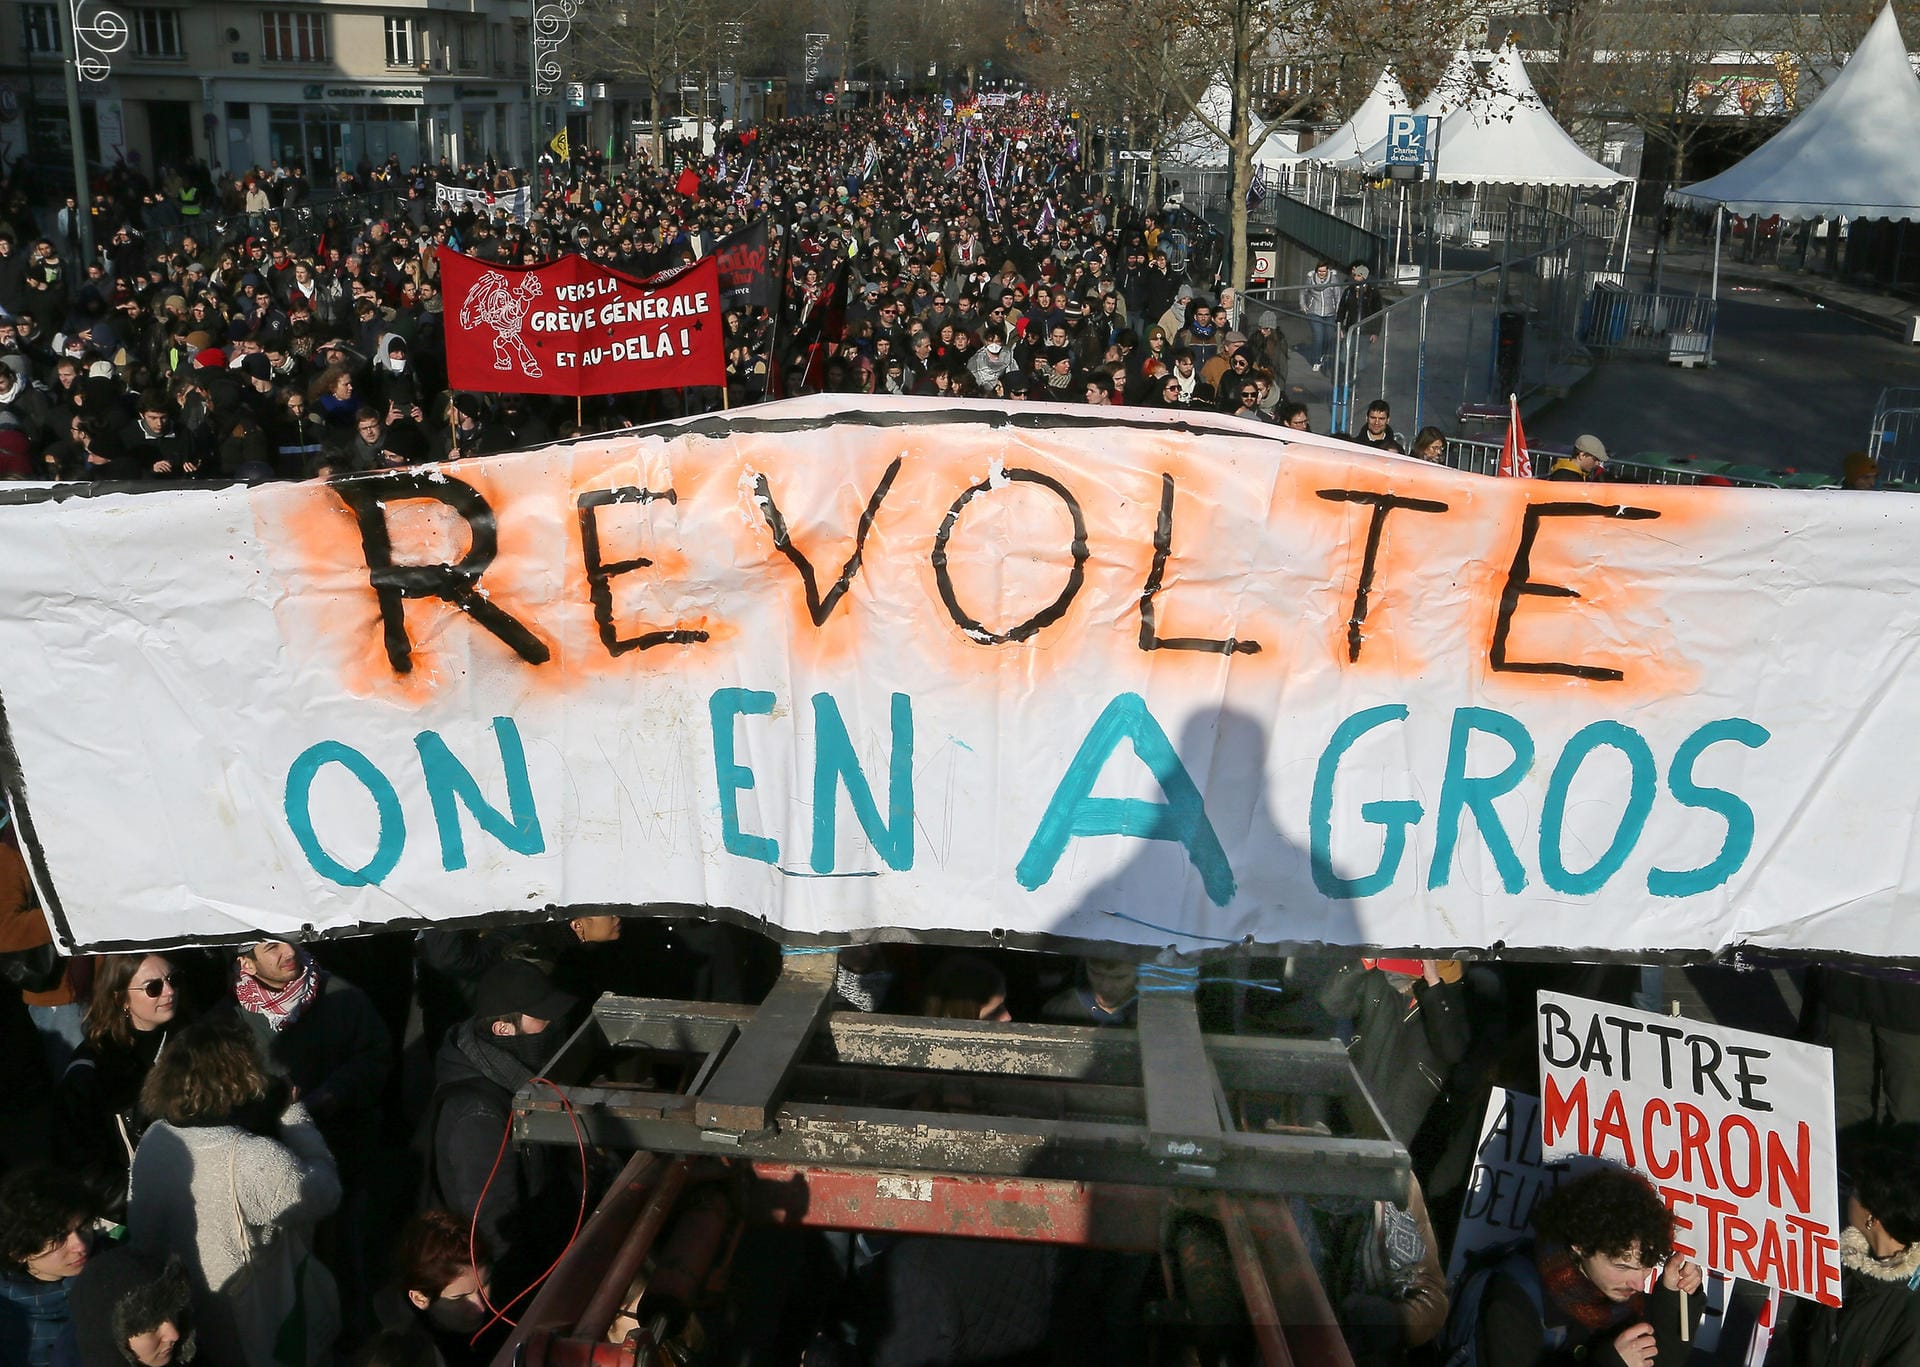 "Aufstand, wir haben es satt": Demonstranten tragen ein großer Banner bei einem Protest in Rennes durch die Straßen.